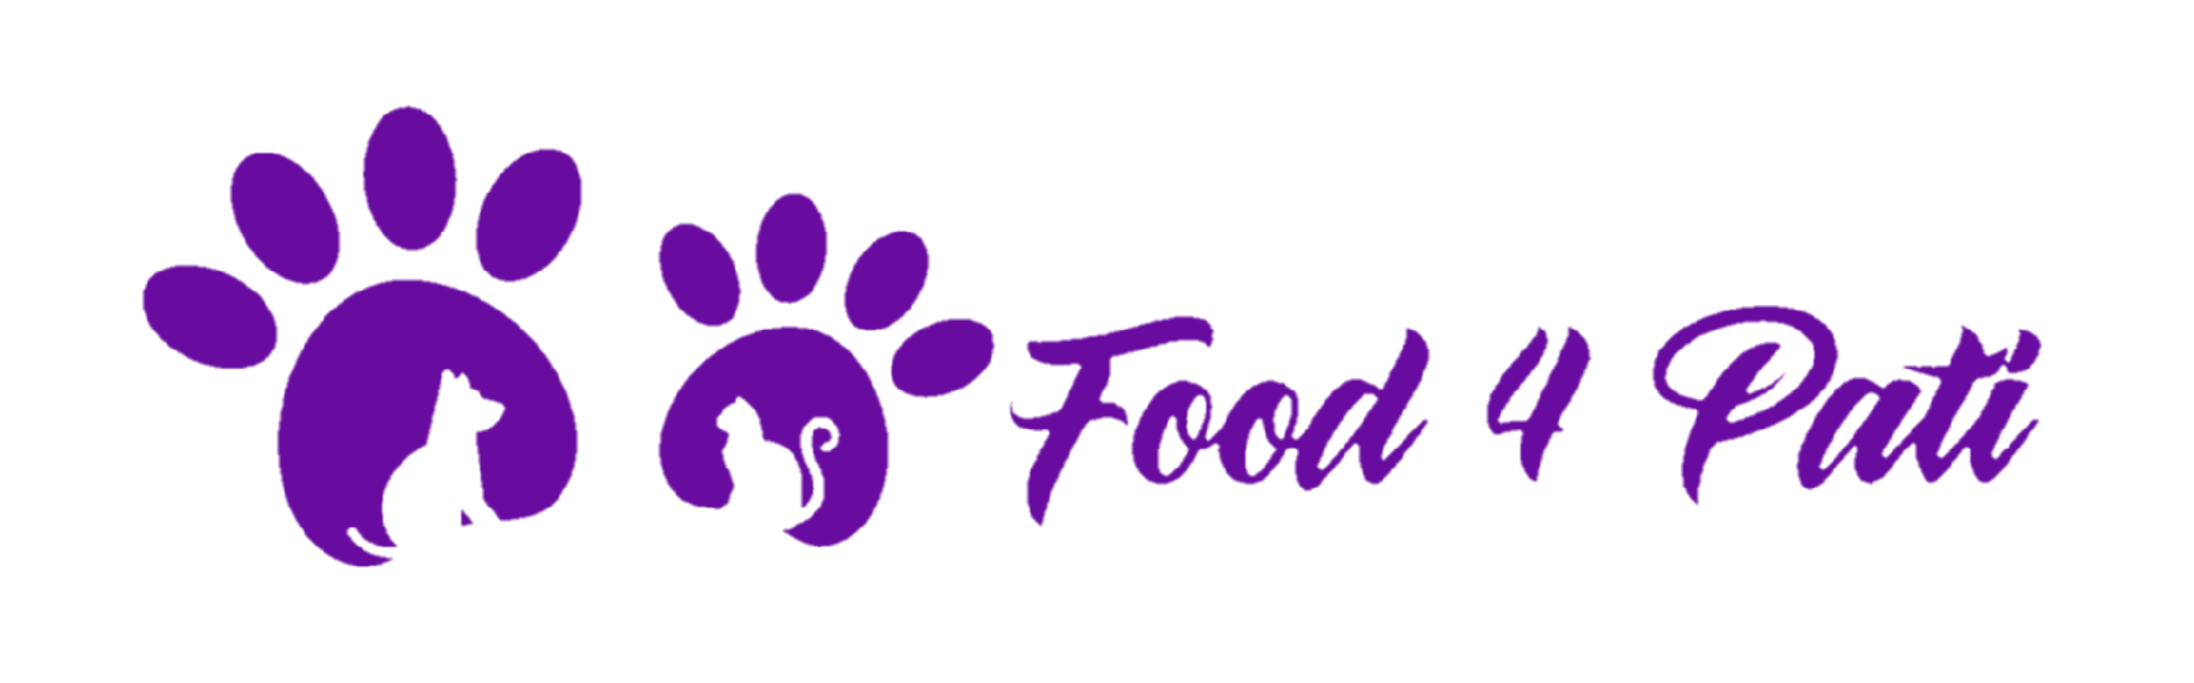 www.food4pati.com